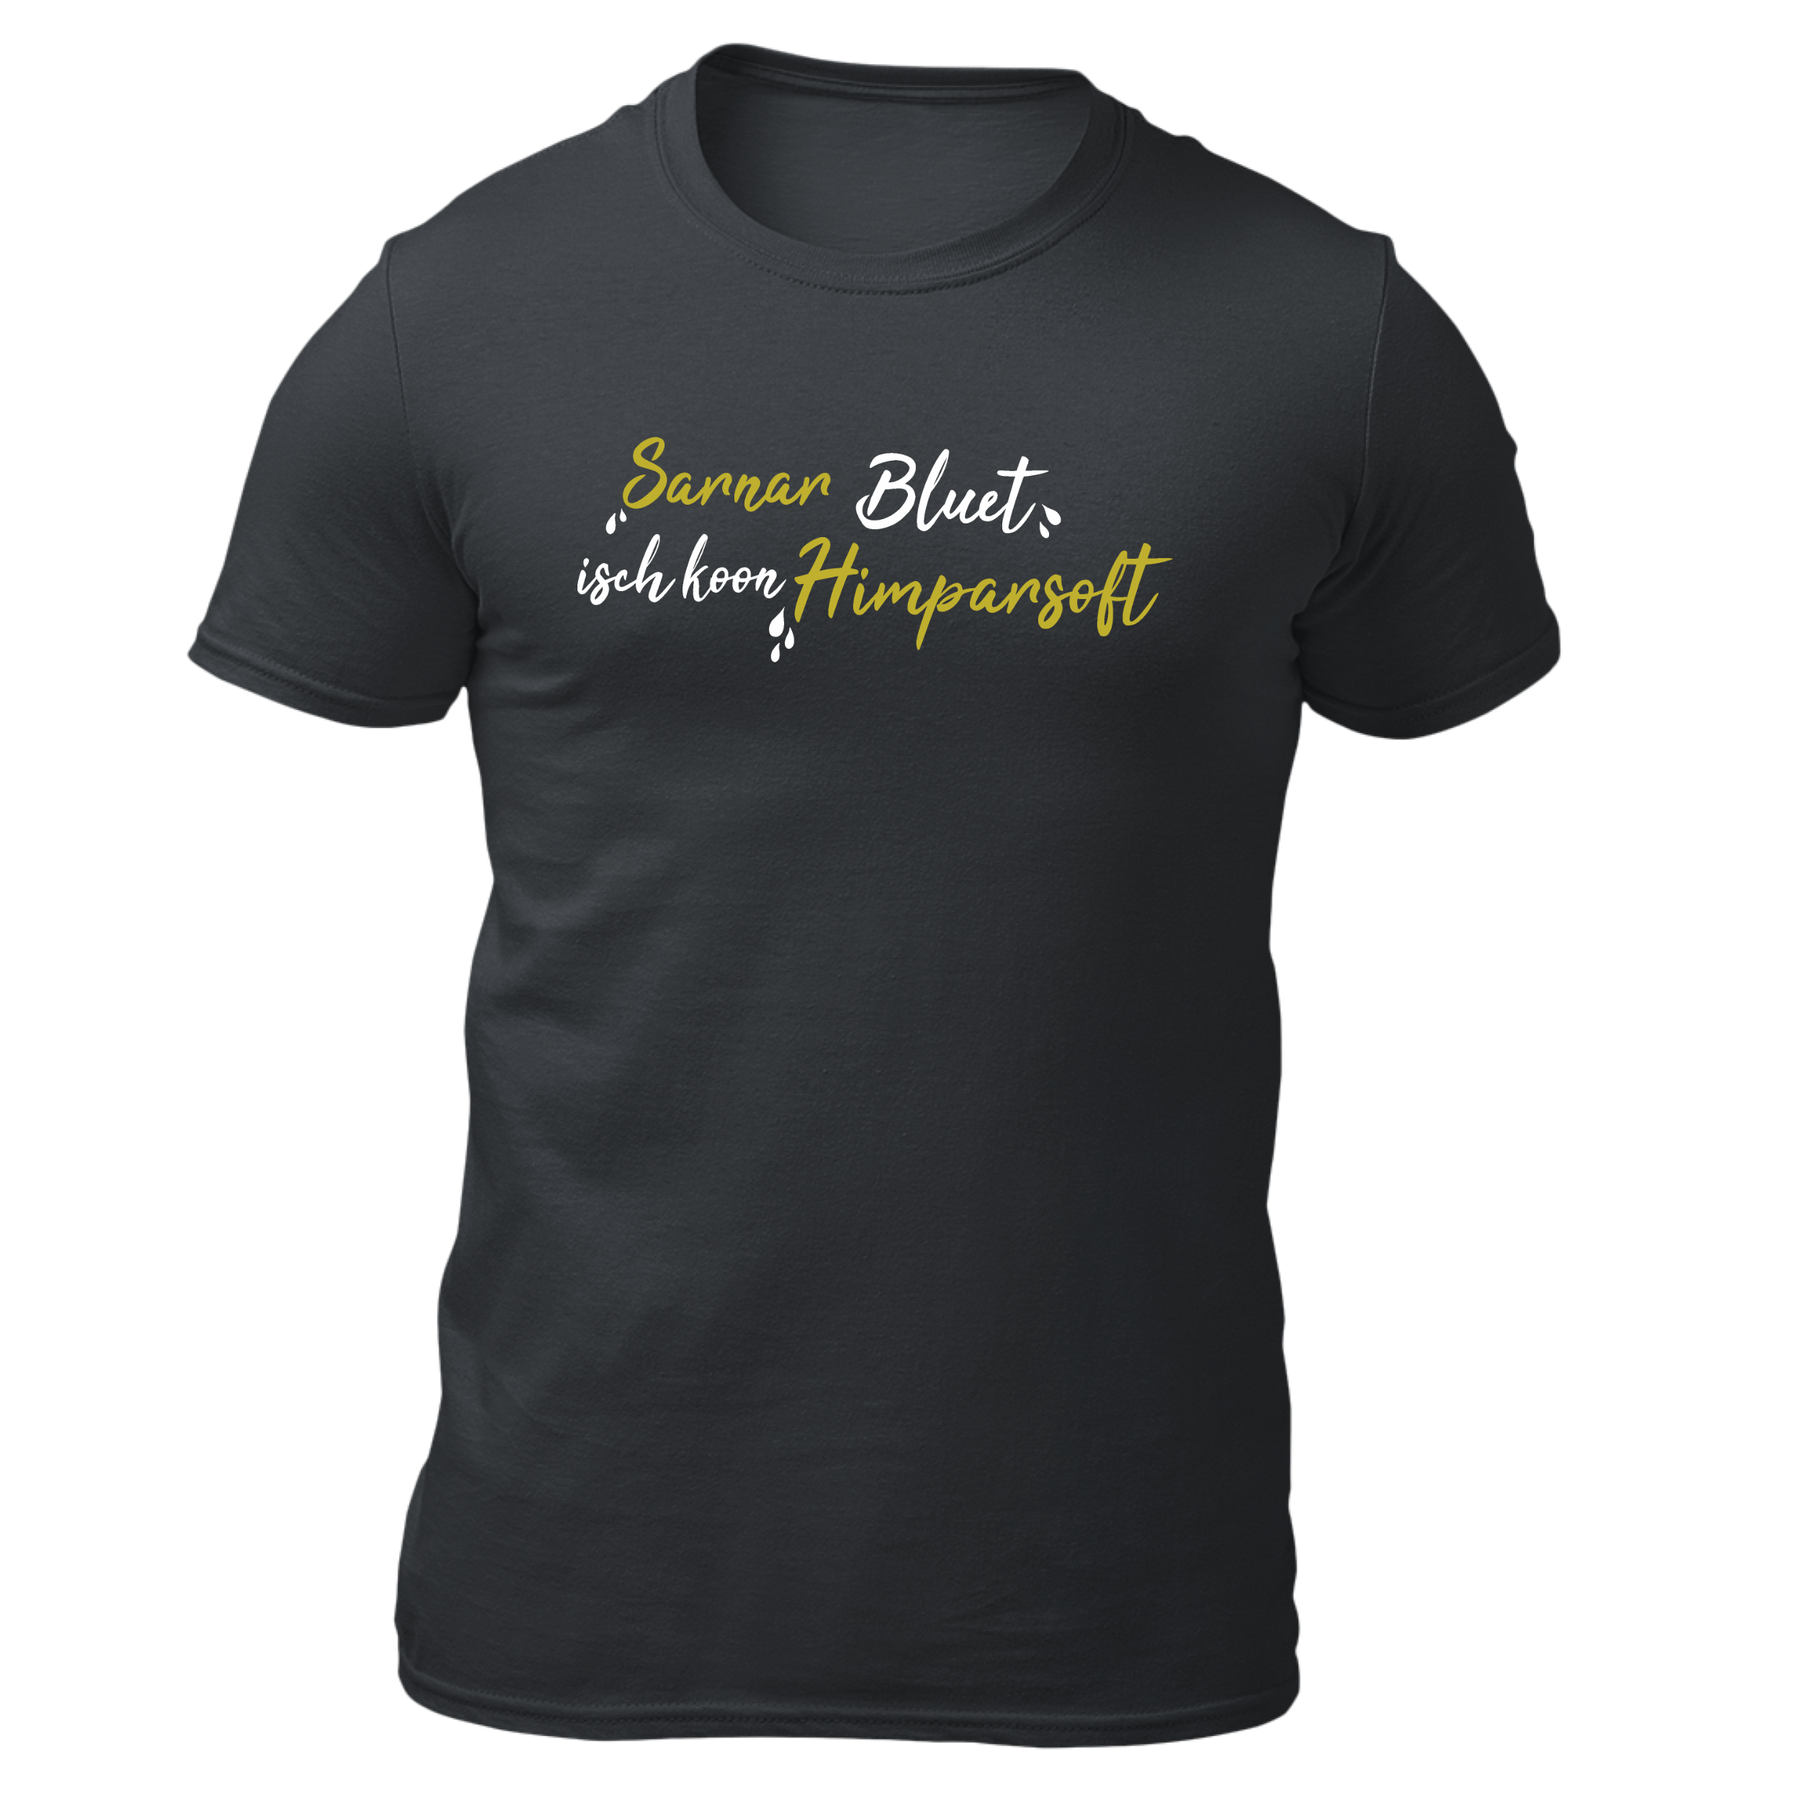 Sarnarbluet isch koon Himparsoft - Herren Shirt Bio - Grau / XS - Shirts & Tops